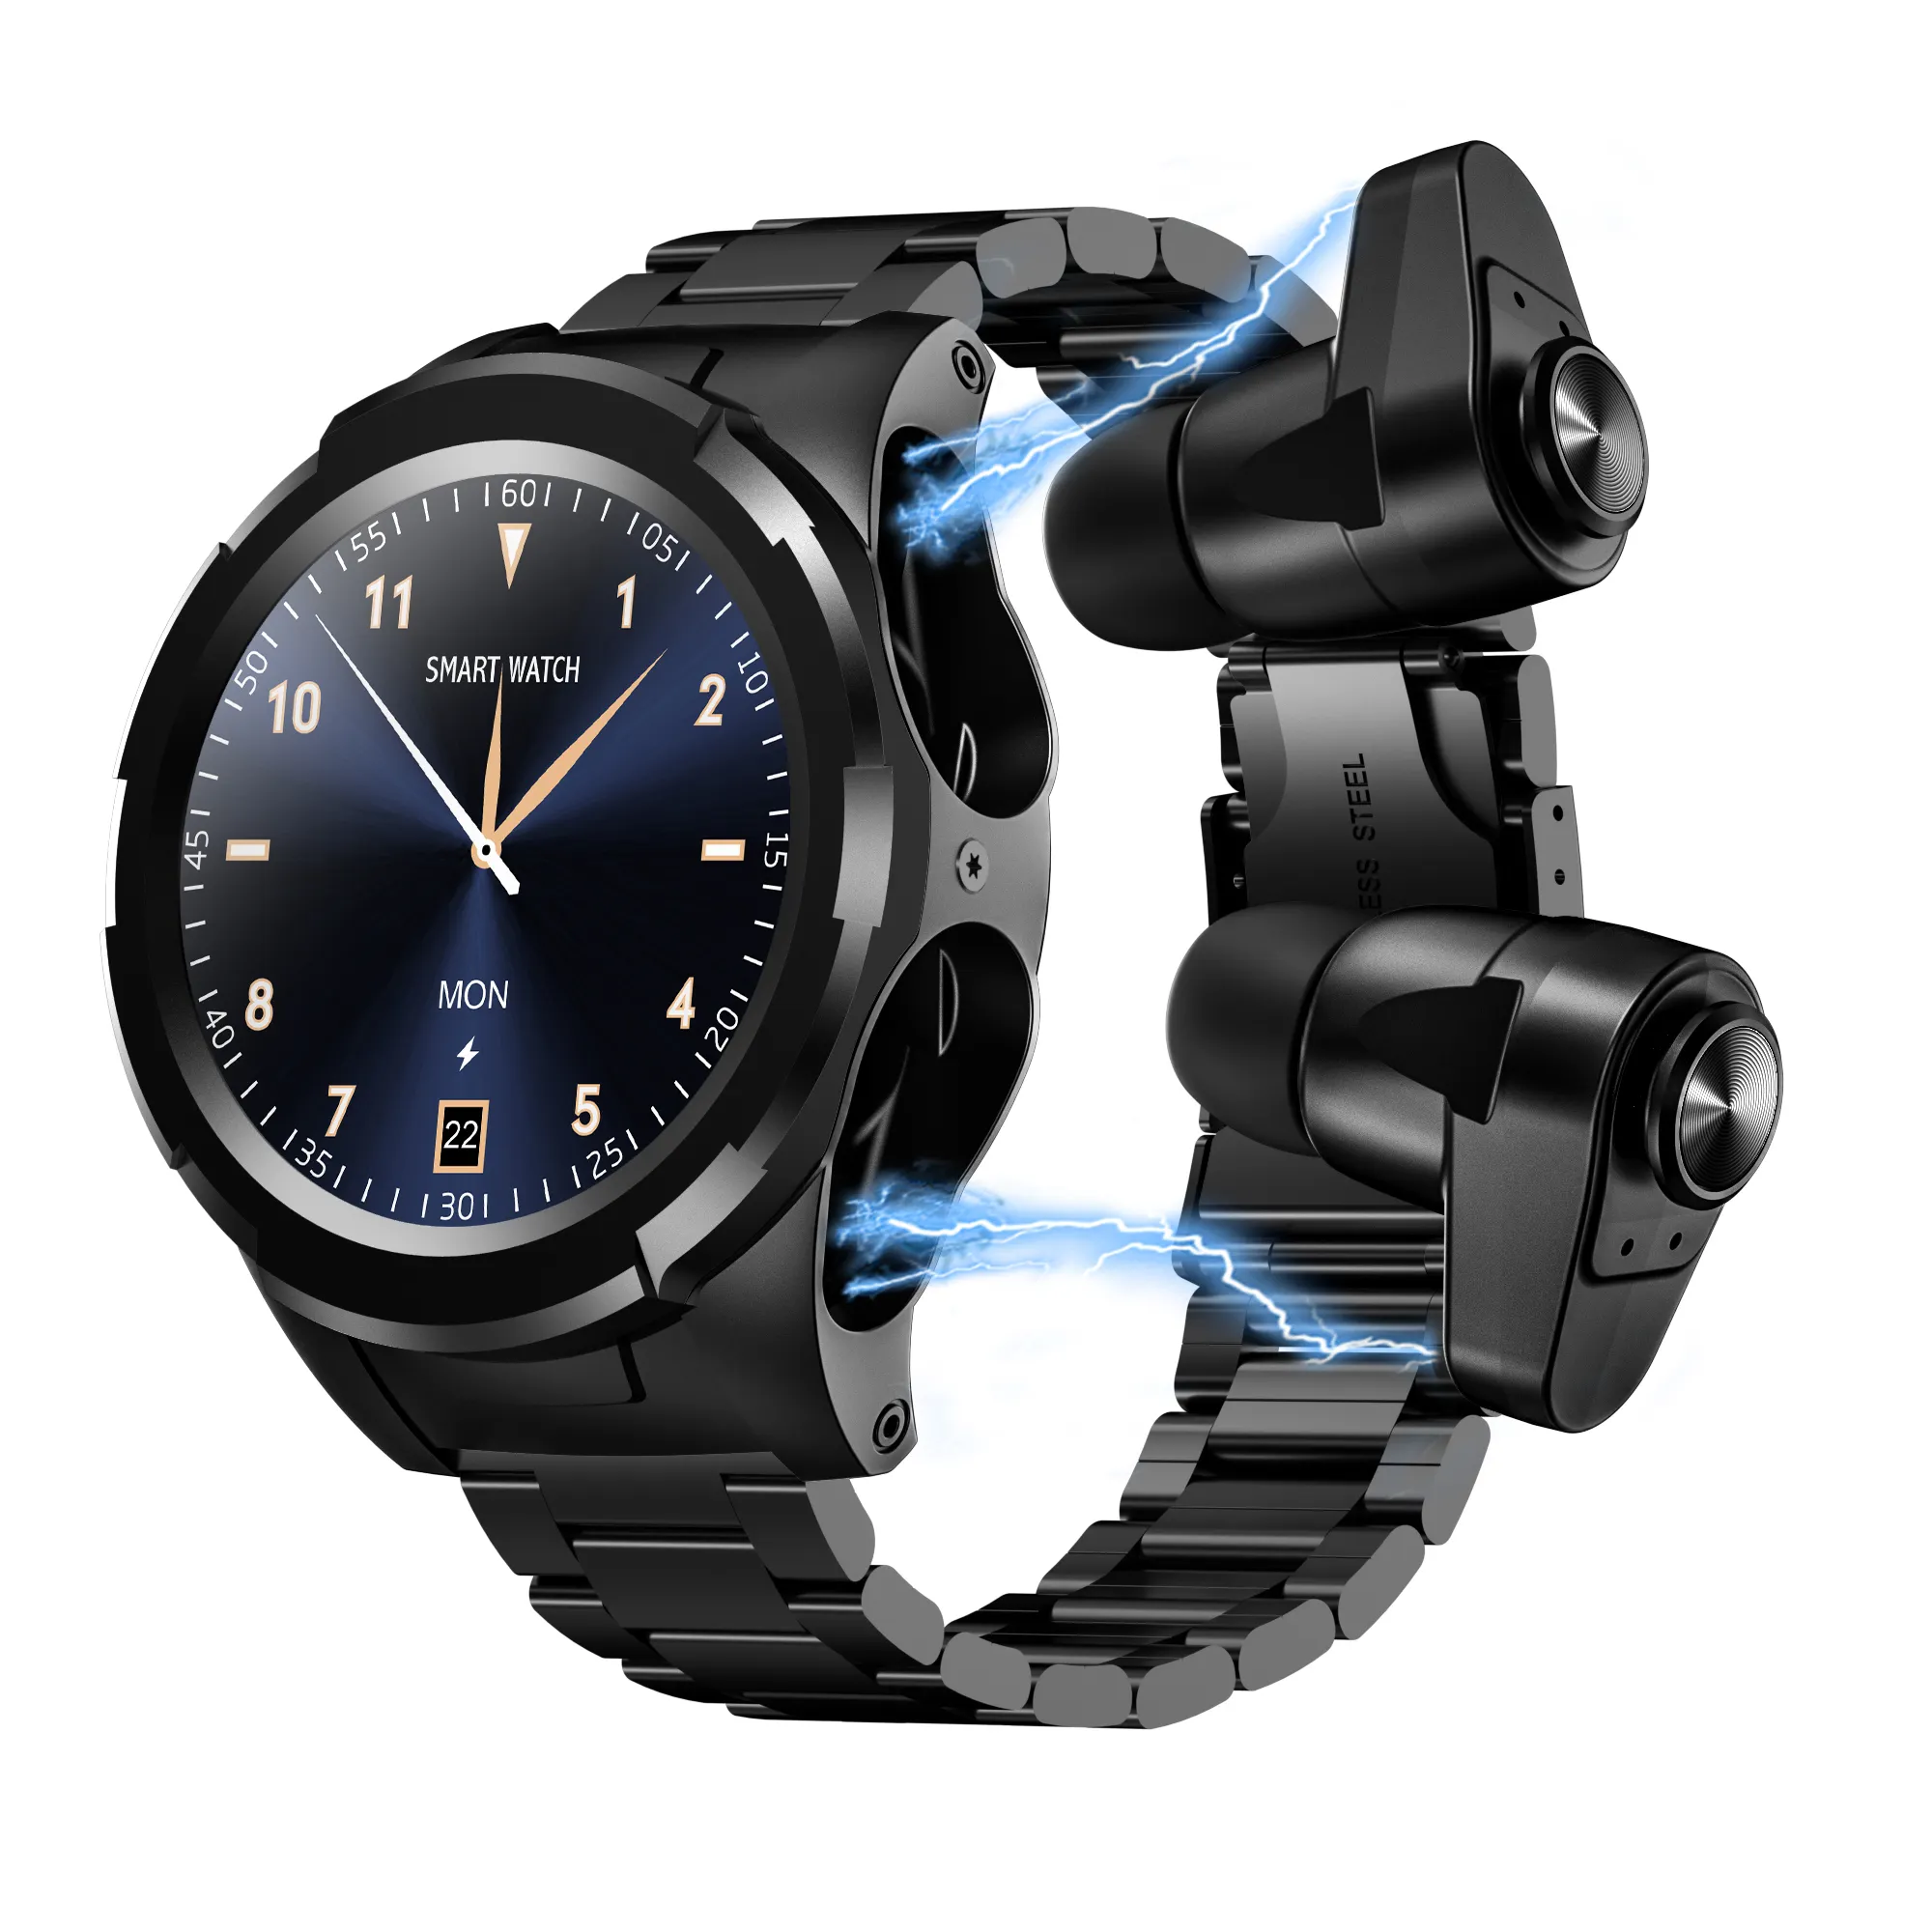 Smartwatch 2 em 1 tws s201/jm06, relógio inteligente, headset, à prova d' água ip67, esportivo, para negócios, com fone de ouvido